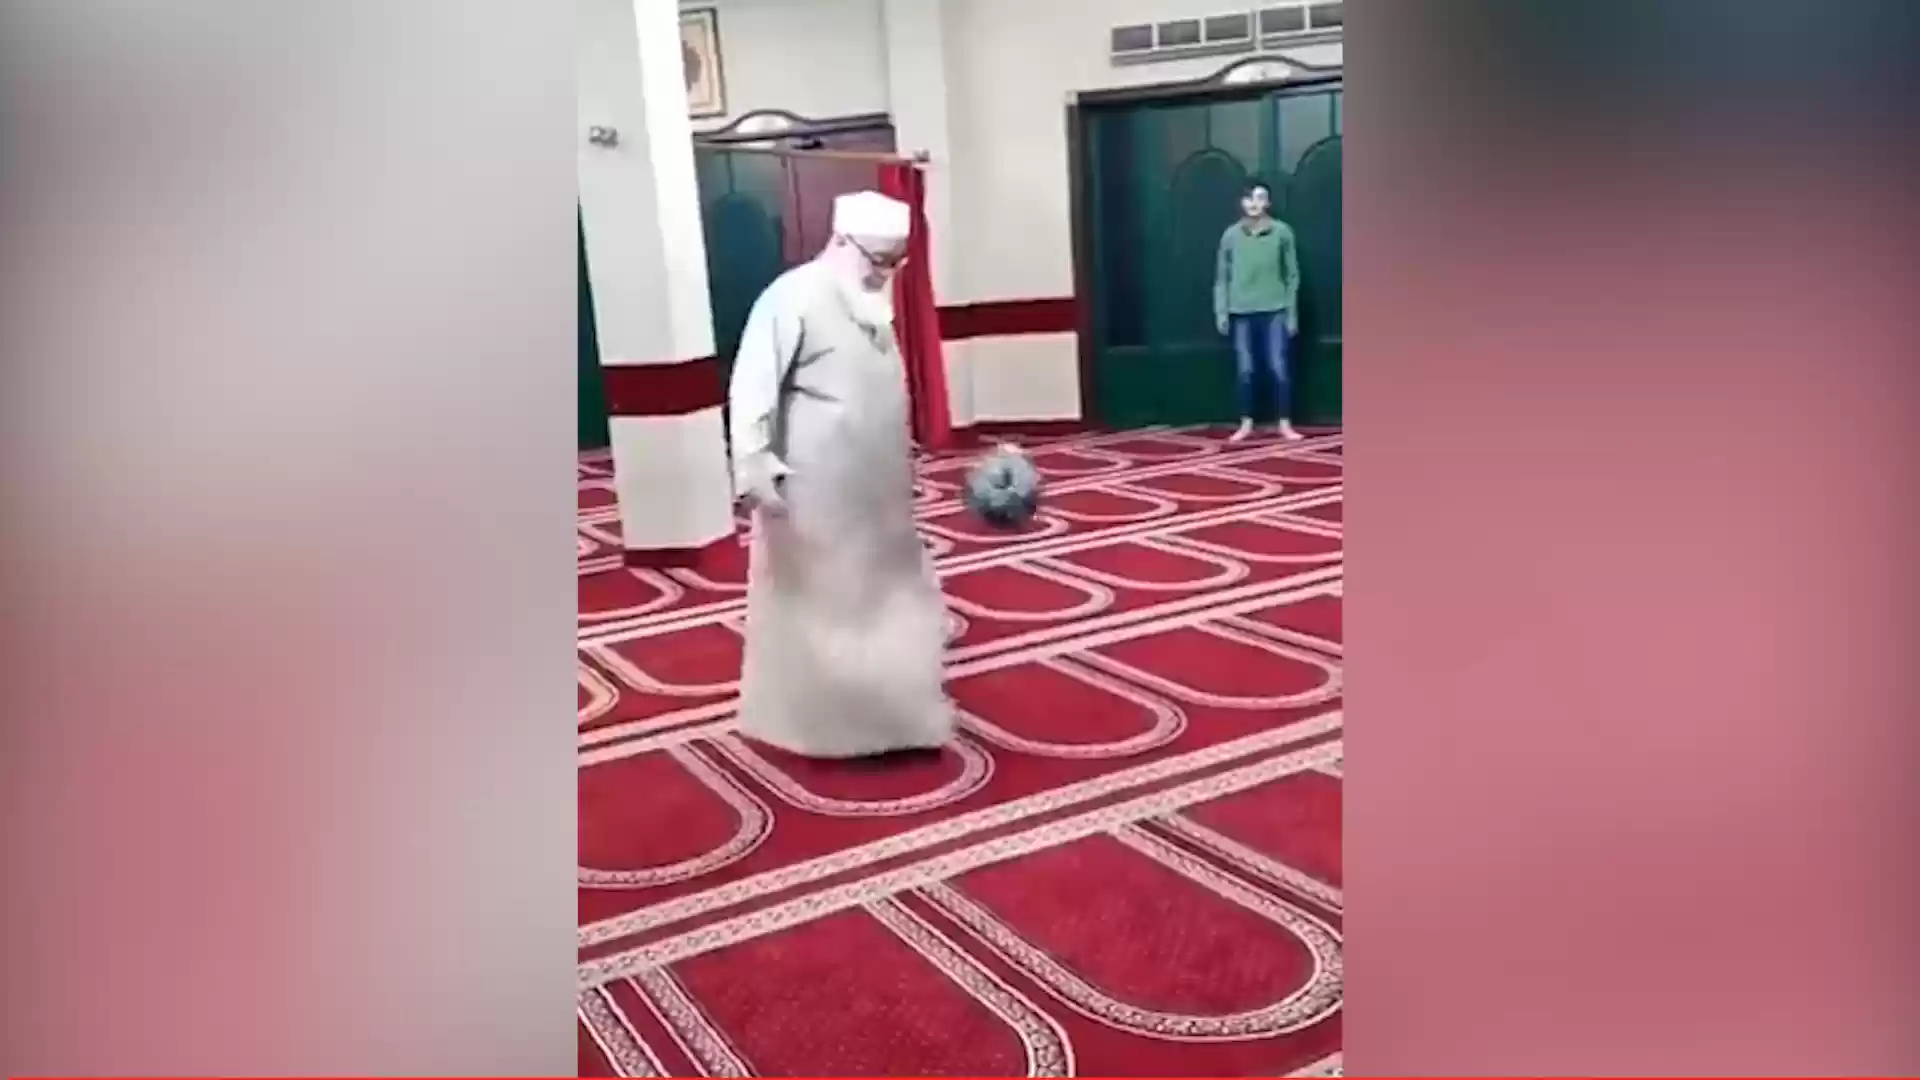 فيديو لعب كرة قدم في المسجد يجتاح مواقع التواصل... شاهد